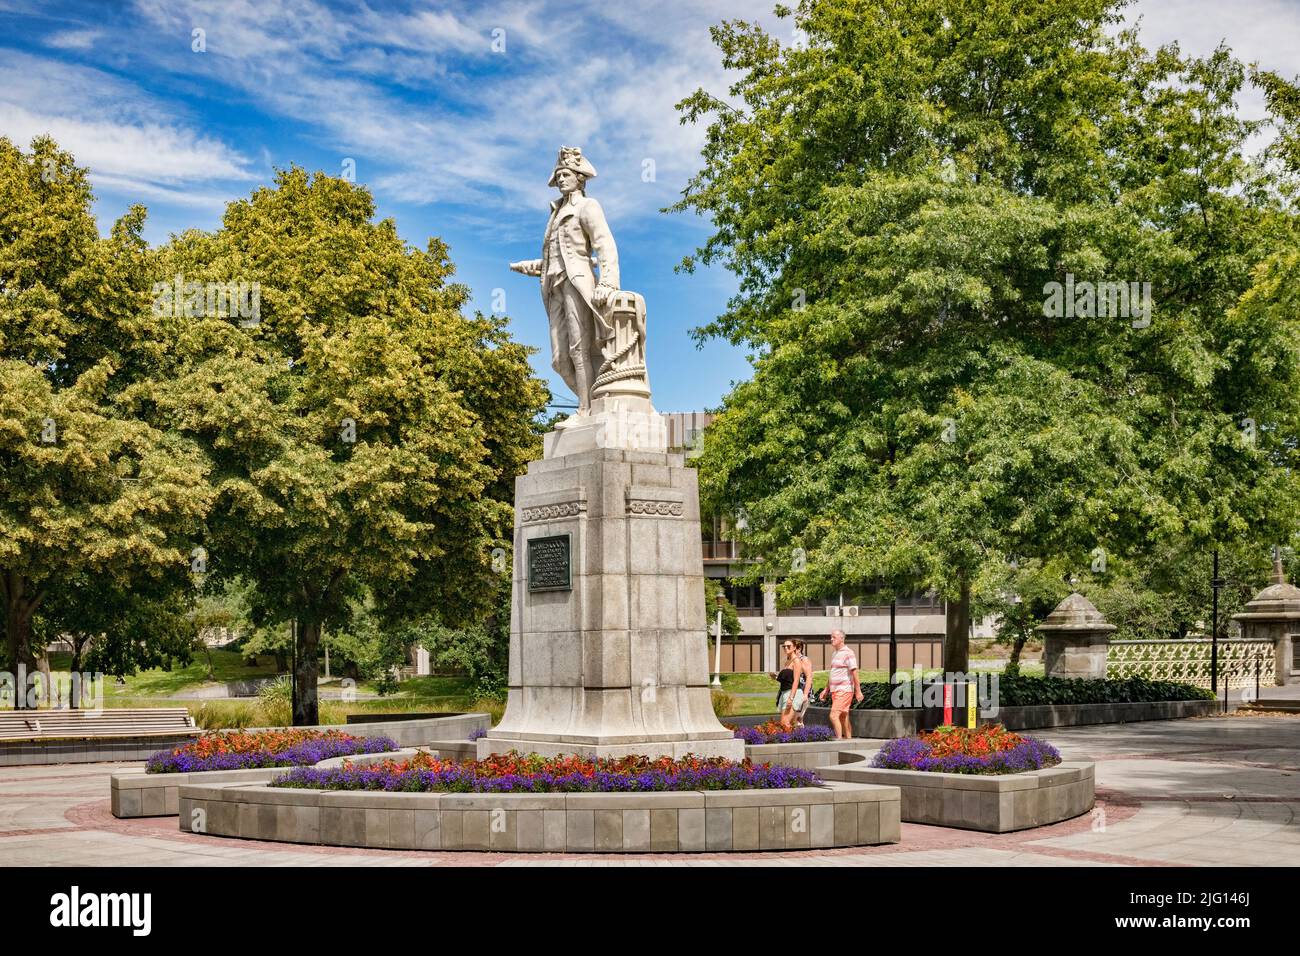 3 gennaio 2019: Christchurch, Nuova Zelanda - Victoria Square in estate, con alberi in foglia piena, e la statua del Capitano James Cook. Foto Stock